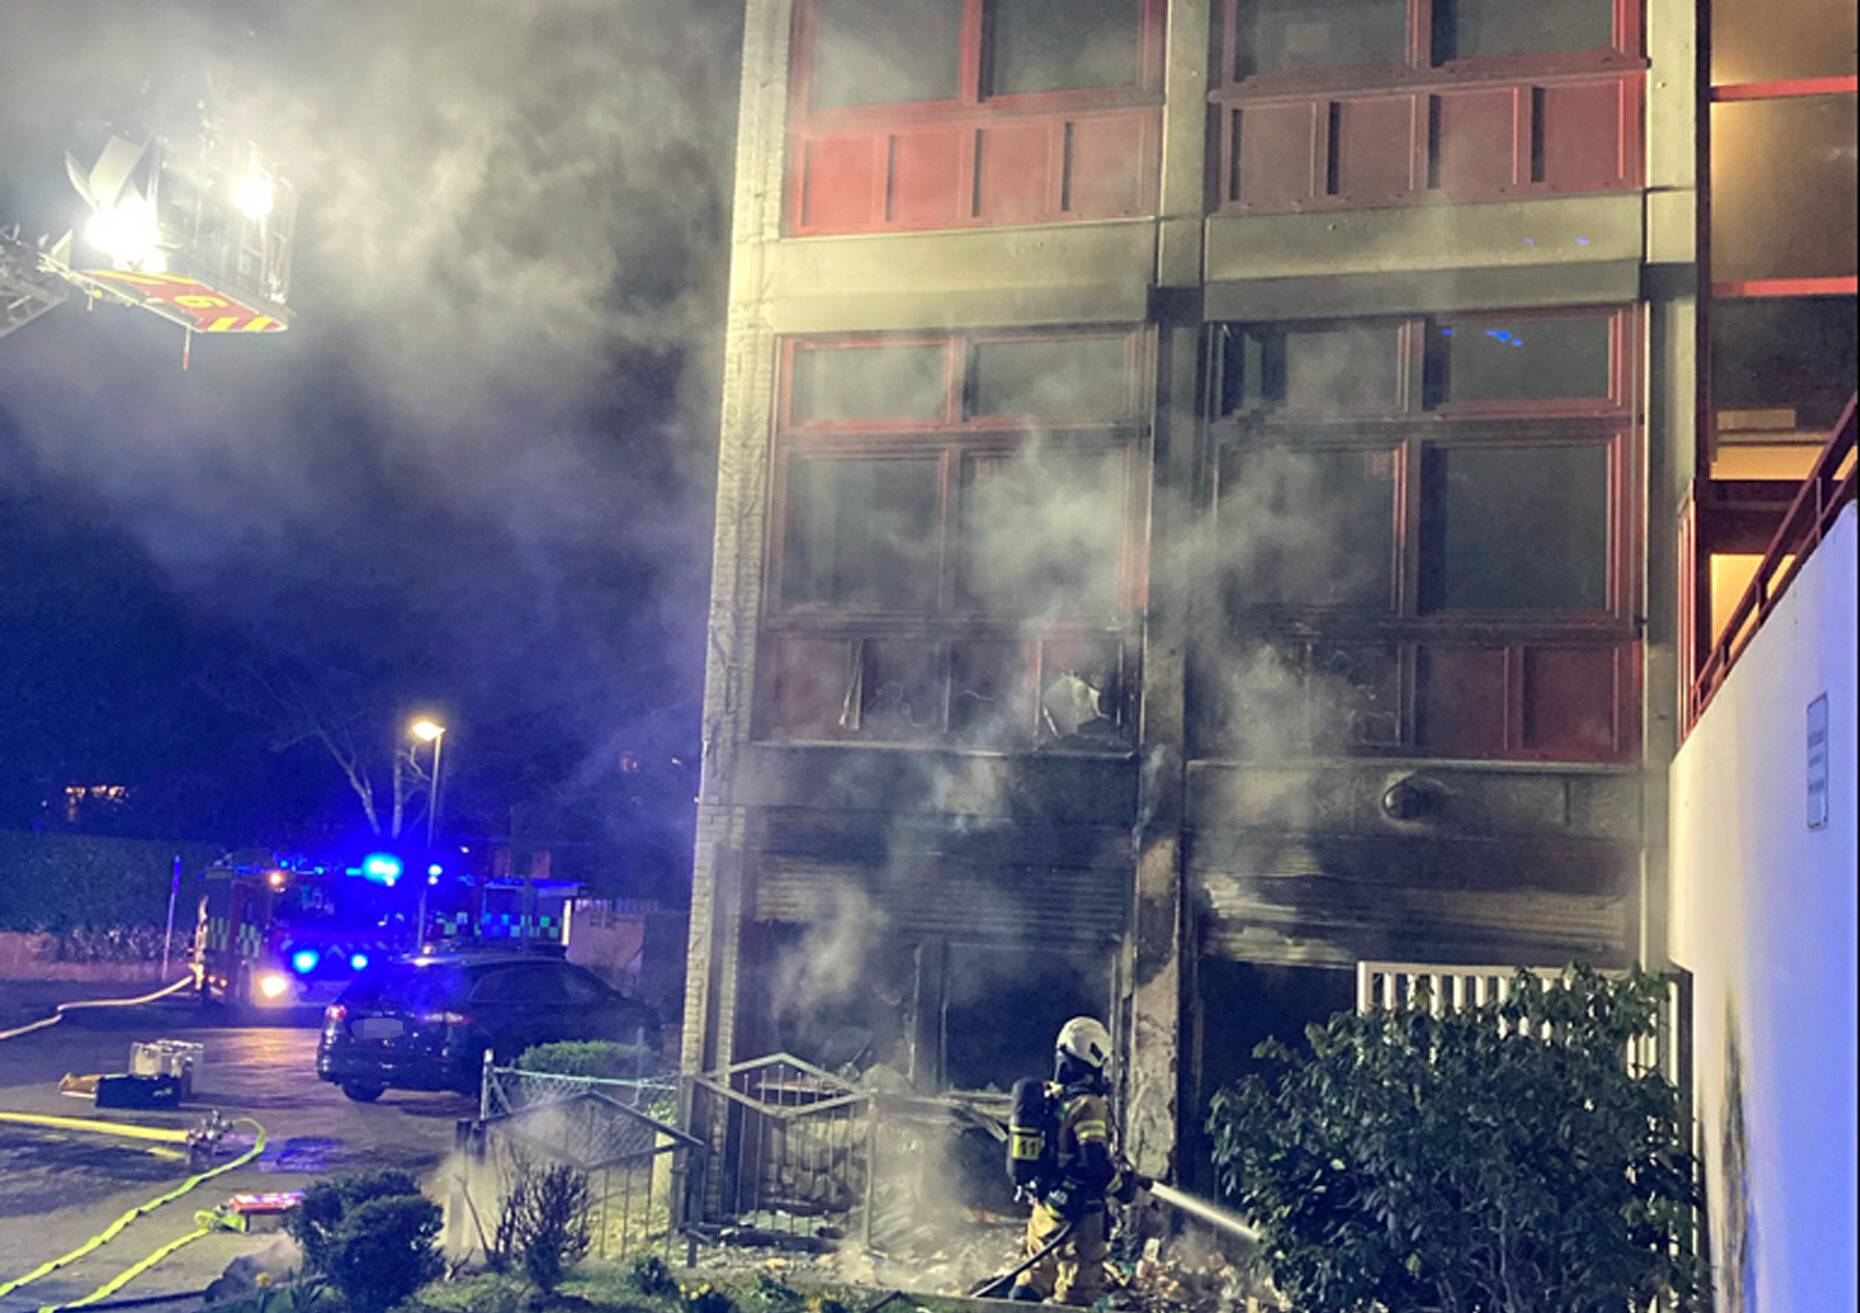  Bei dem Brand am Schulgebäude an der Straße Borner Weg wurde die Fassade schwer beschädigt. Die Polizei ermittelt zur Brandursache und sucht Zeugen. 